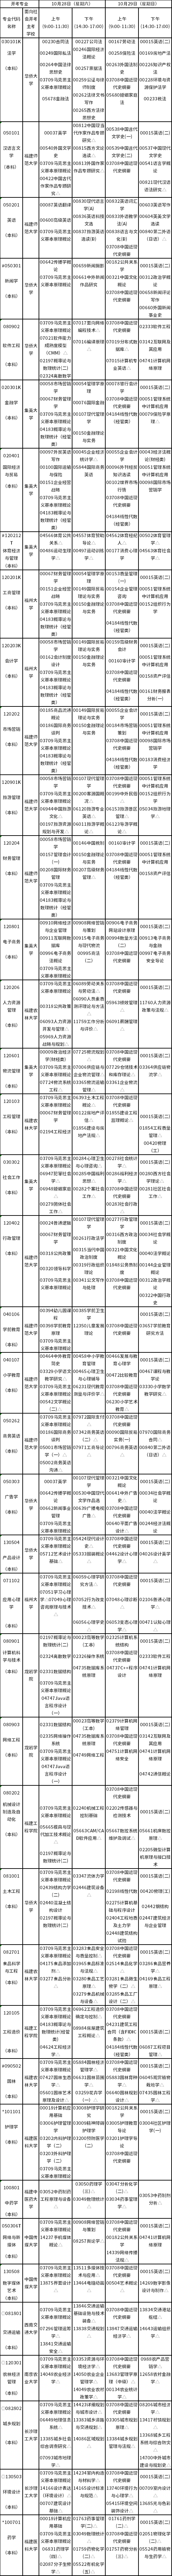 福建省2023年10月自考开考专业理论课程考试安排表